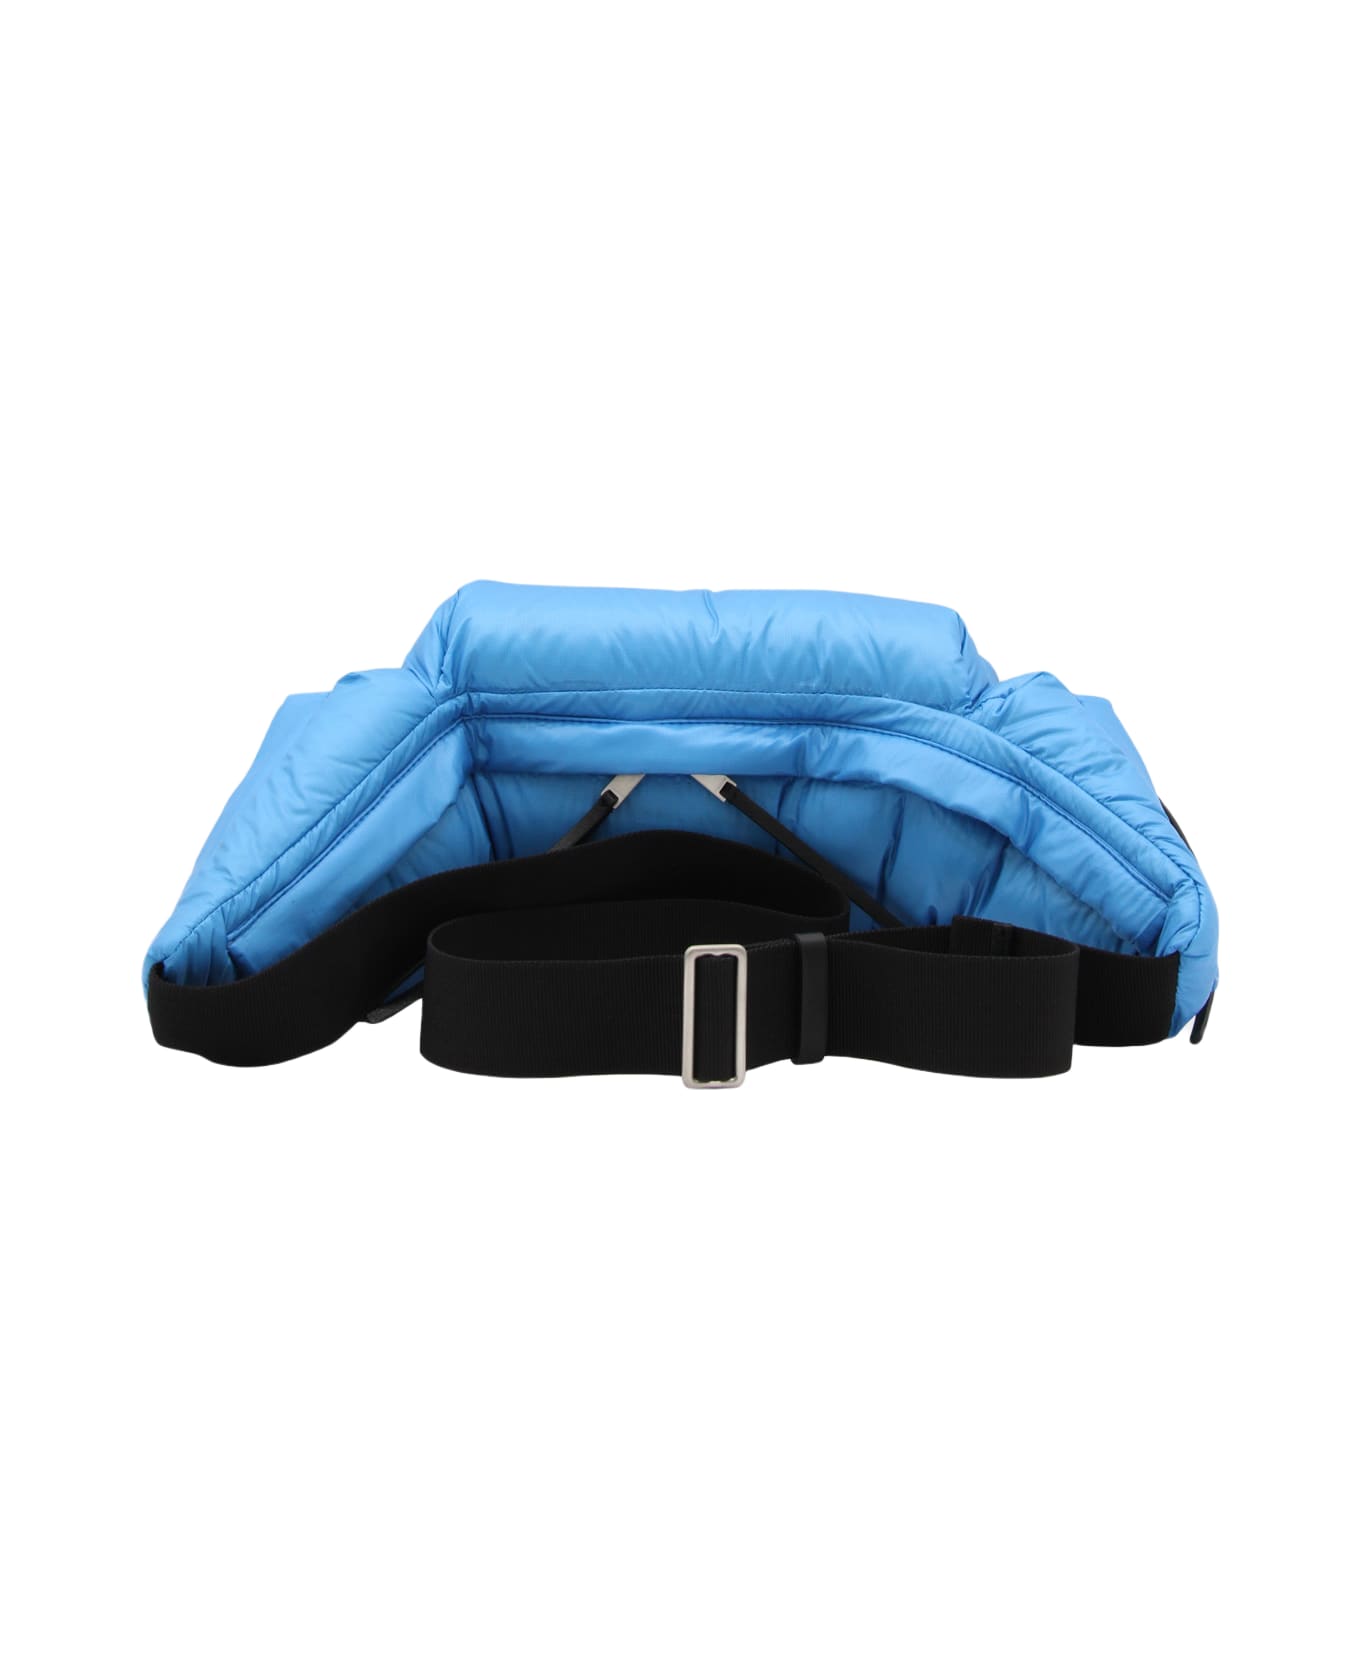 Jil Sander Light Blue And Black Canvas Belt Bag - CYAN BLUE